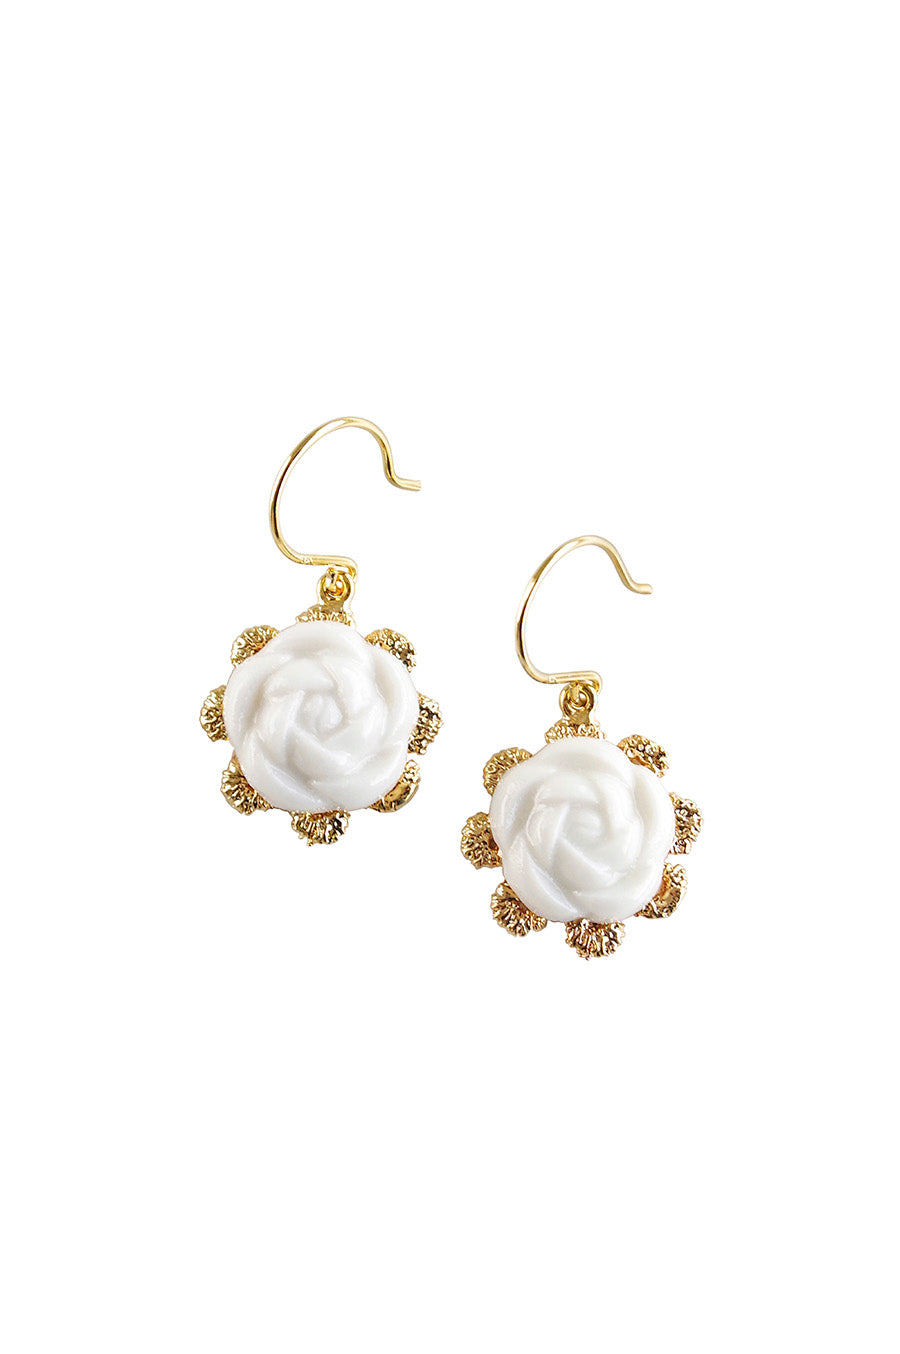 Everyday Porcelain Camellia Flower Charm Earrings